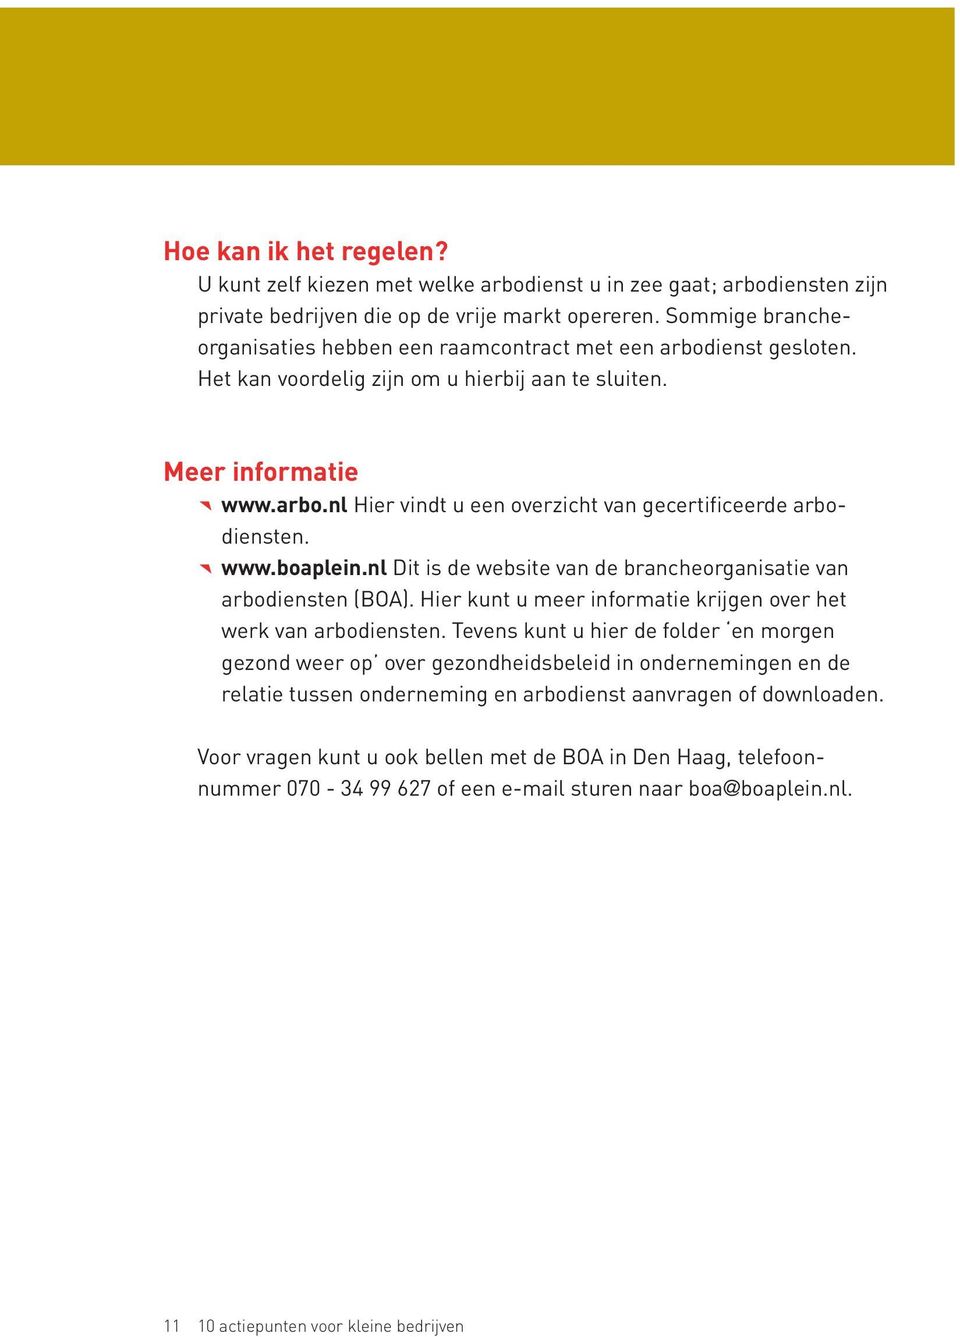 www.boaplein.nl Dit is de website van de brancheorganisatie van arbodiensten (BOA). Hier kunt u meer informatie krijgen over het werk van arbodiensten.